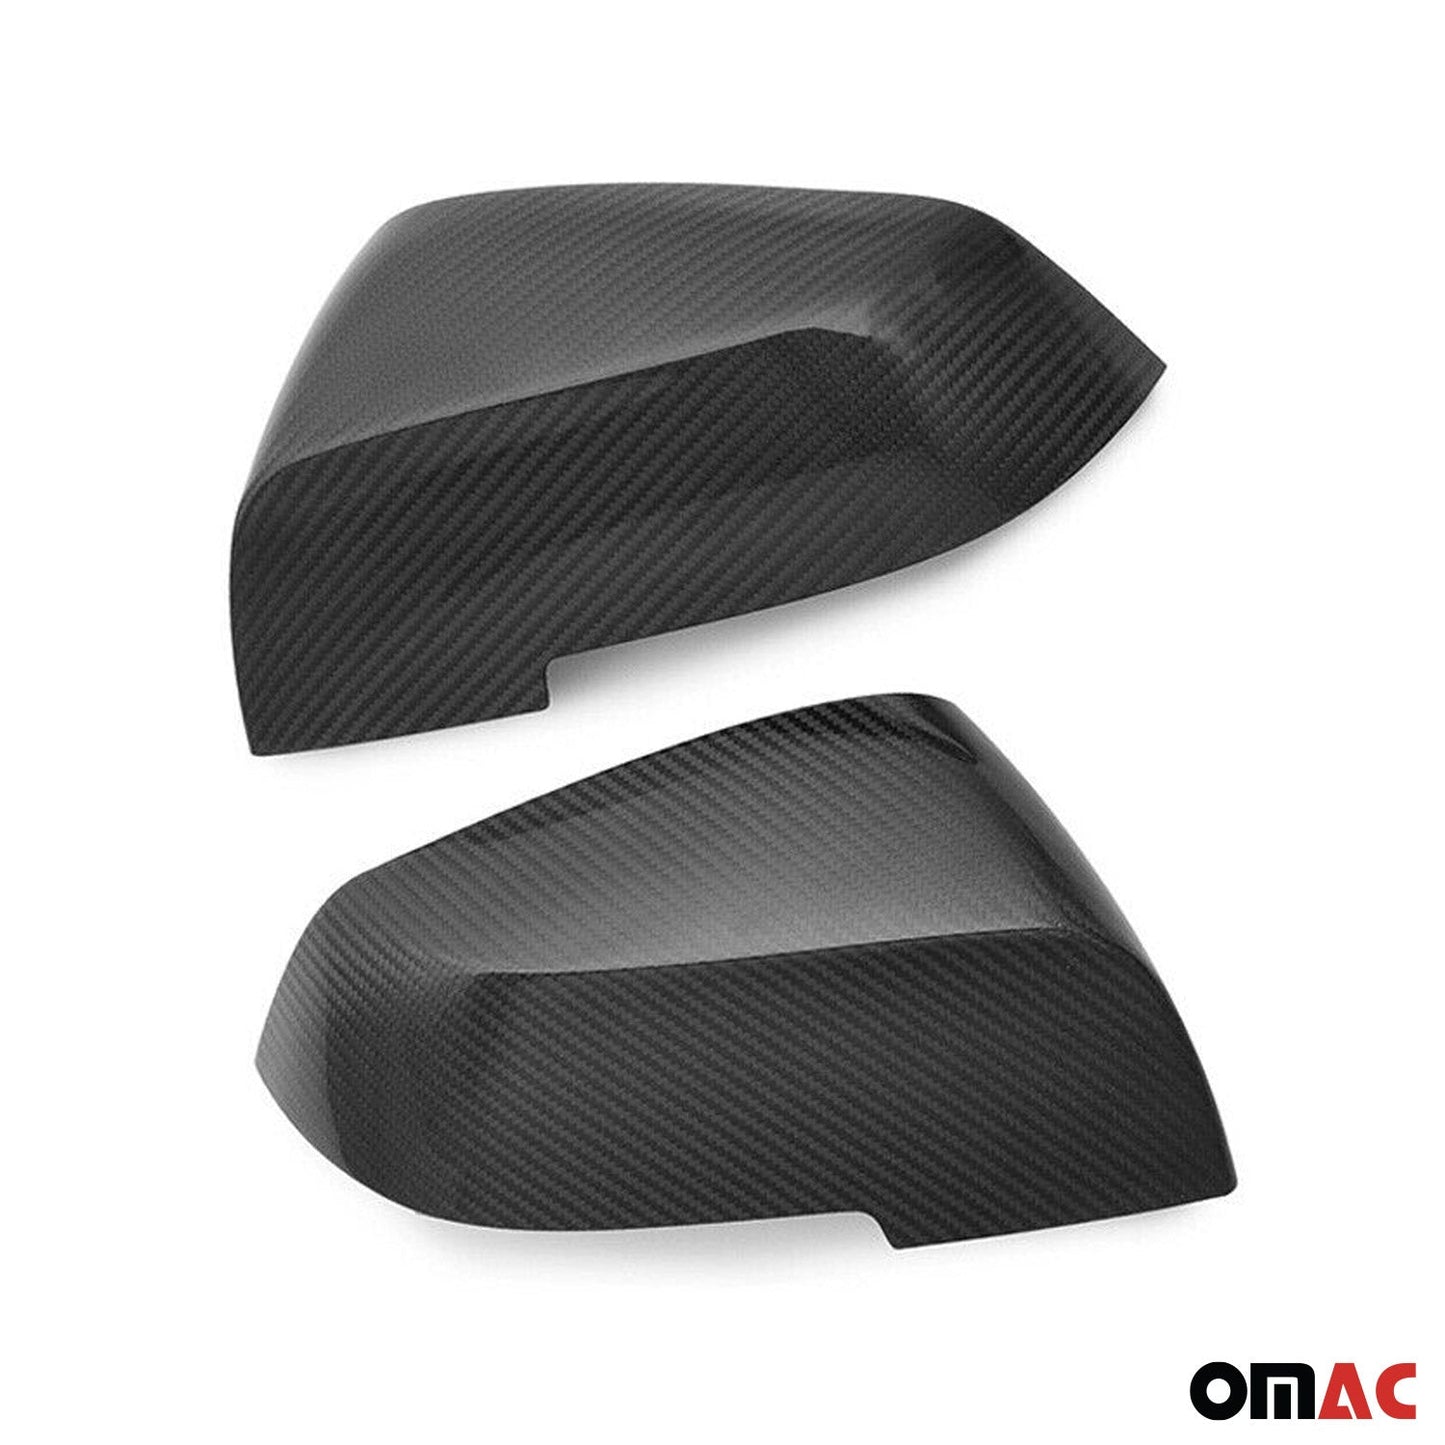 OMAC Fits BMW i3 Series i01 2013-2021 Genuine Carbon Fiber Side Mirror Cover Cap 2Pcs U003399